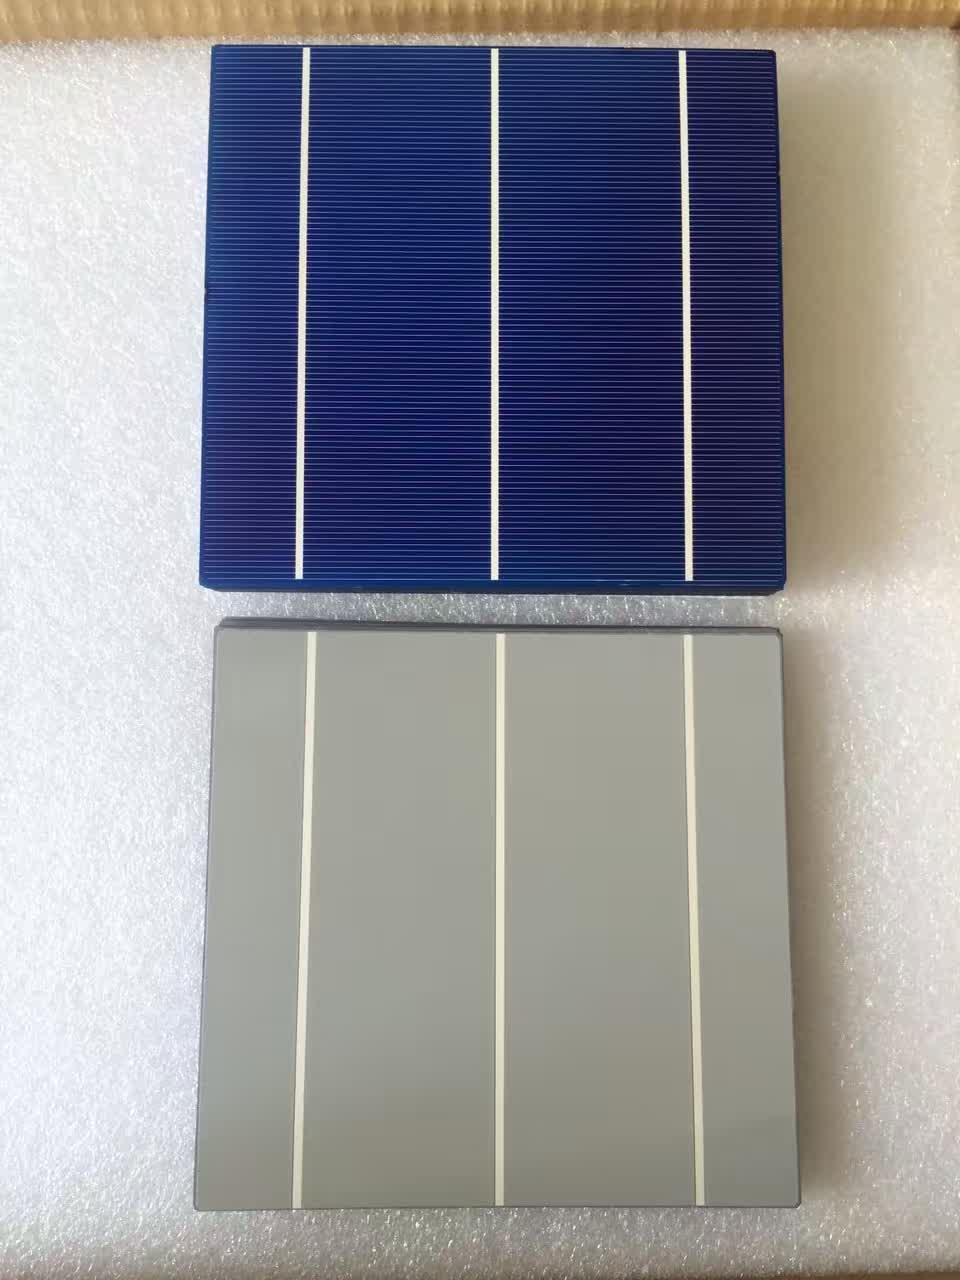 太阳能电池片如何保持较长使用寿命|高效回收高效太阳能电池片